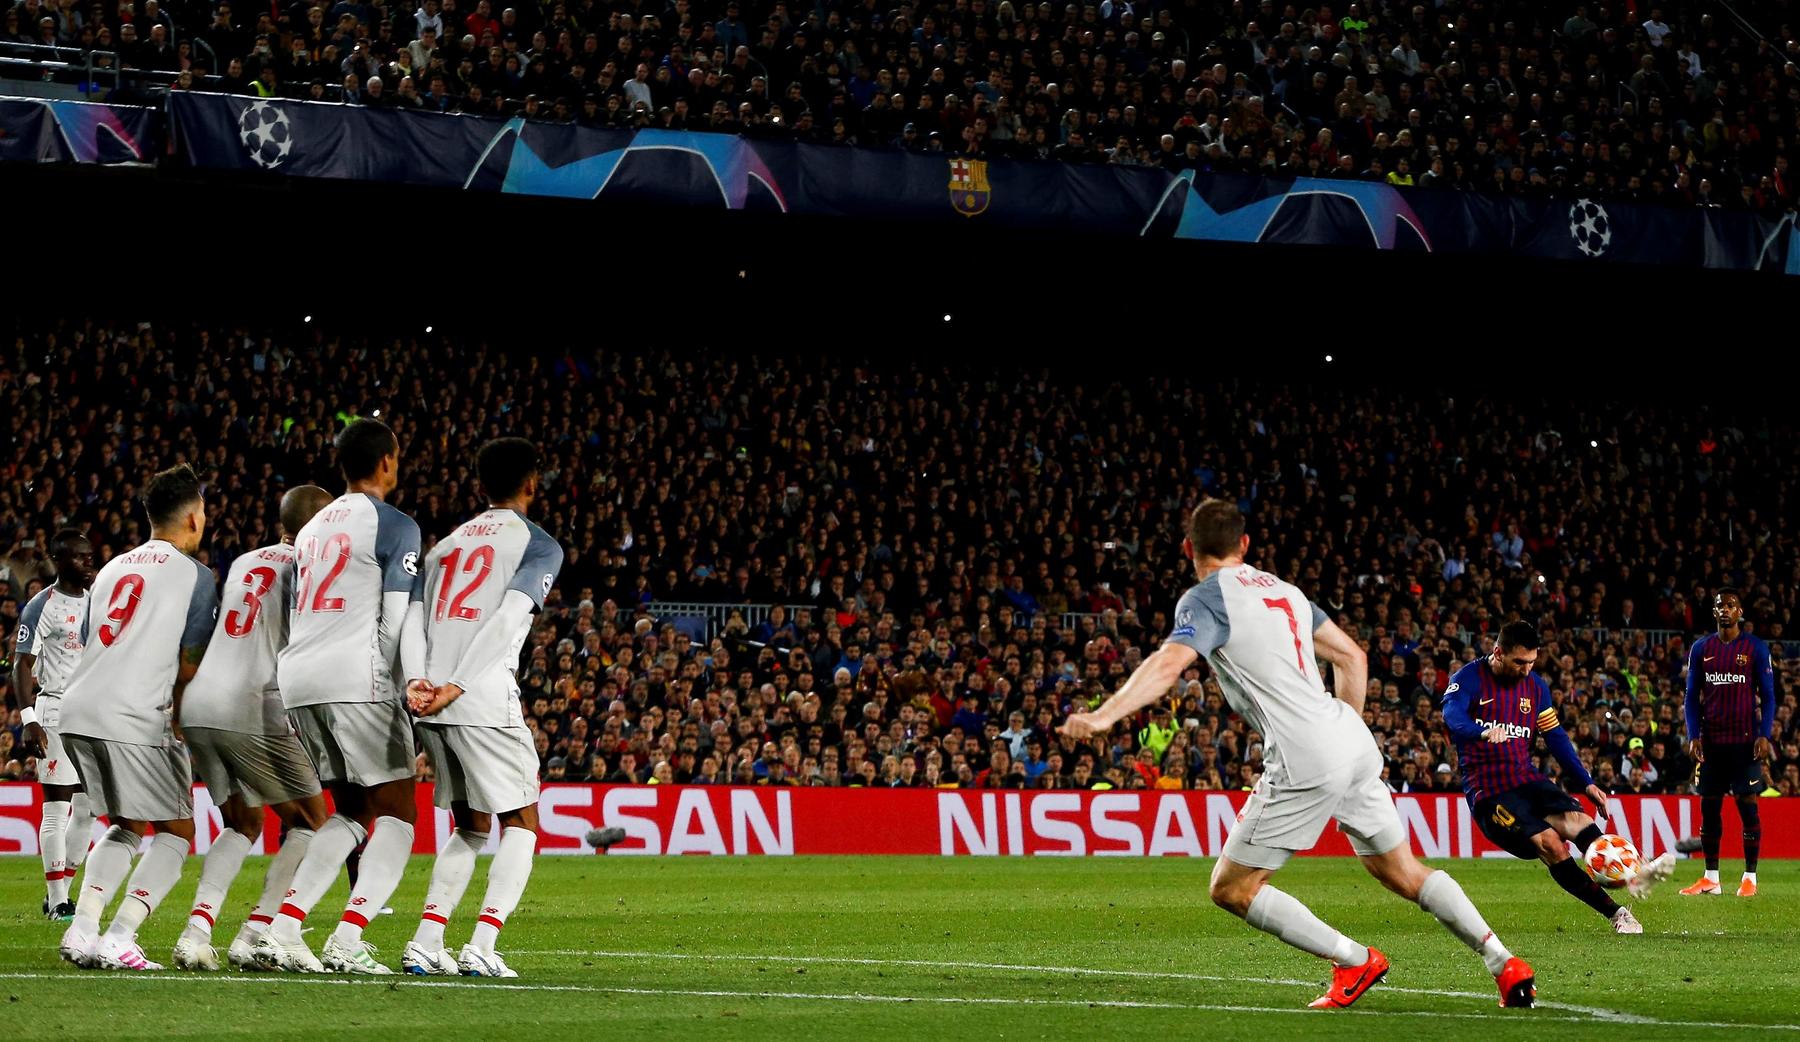 La anotación se suscitó al minuto 82 y significó el gol número 12 para Lionel Messi, quien al término de la competencia se convirtió en el líder de goleo.